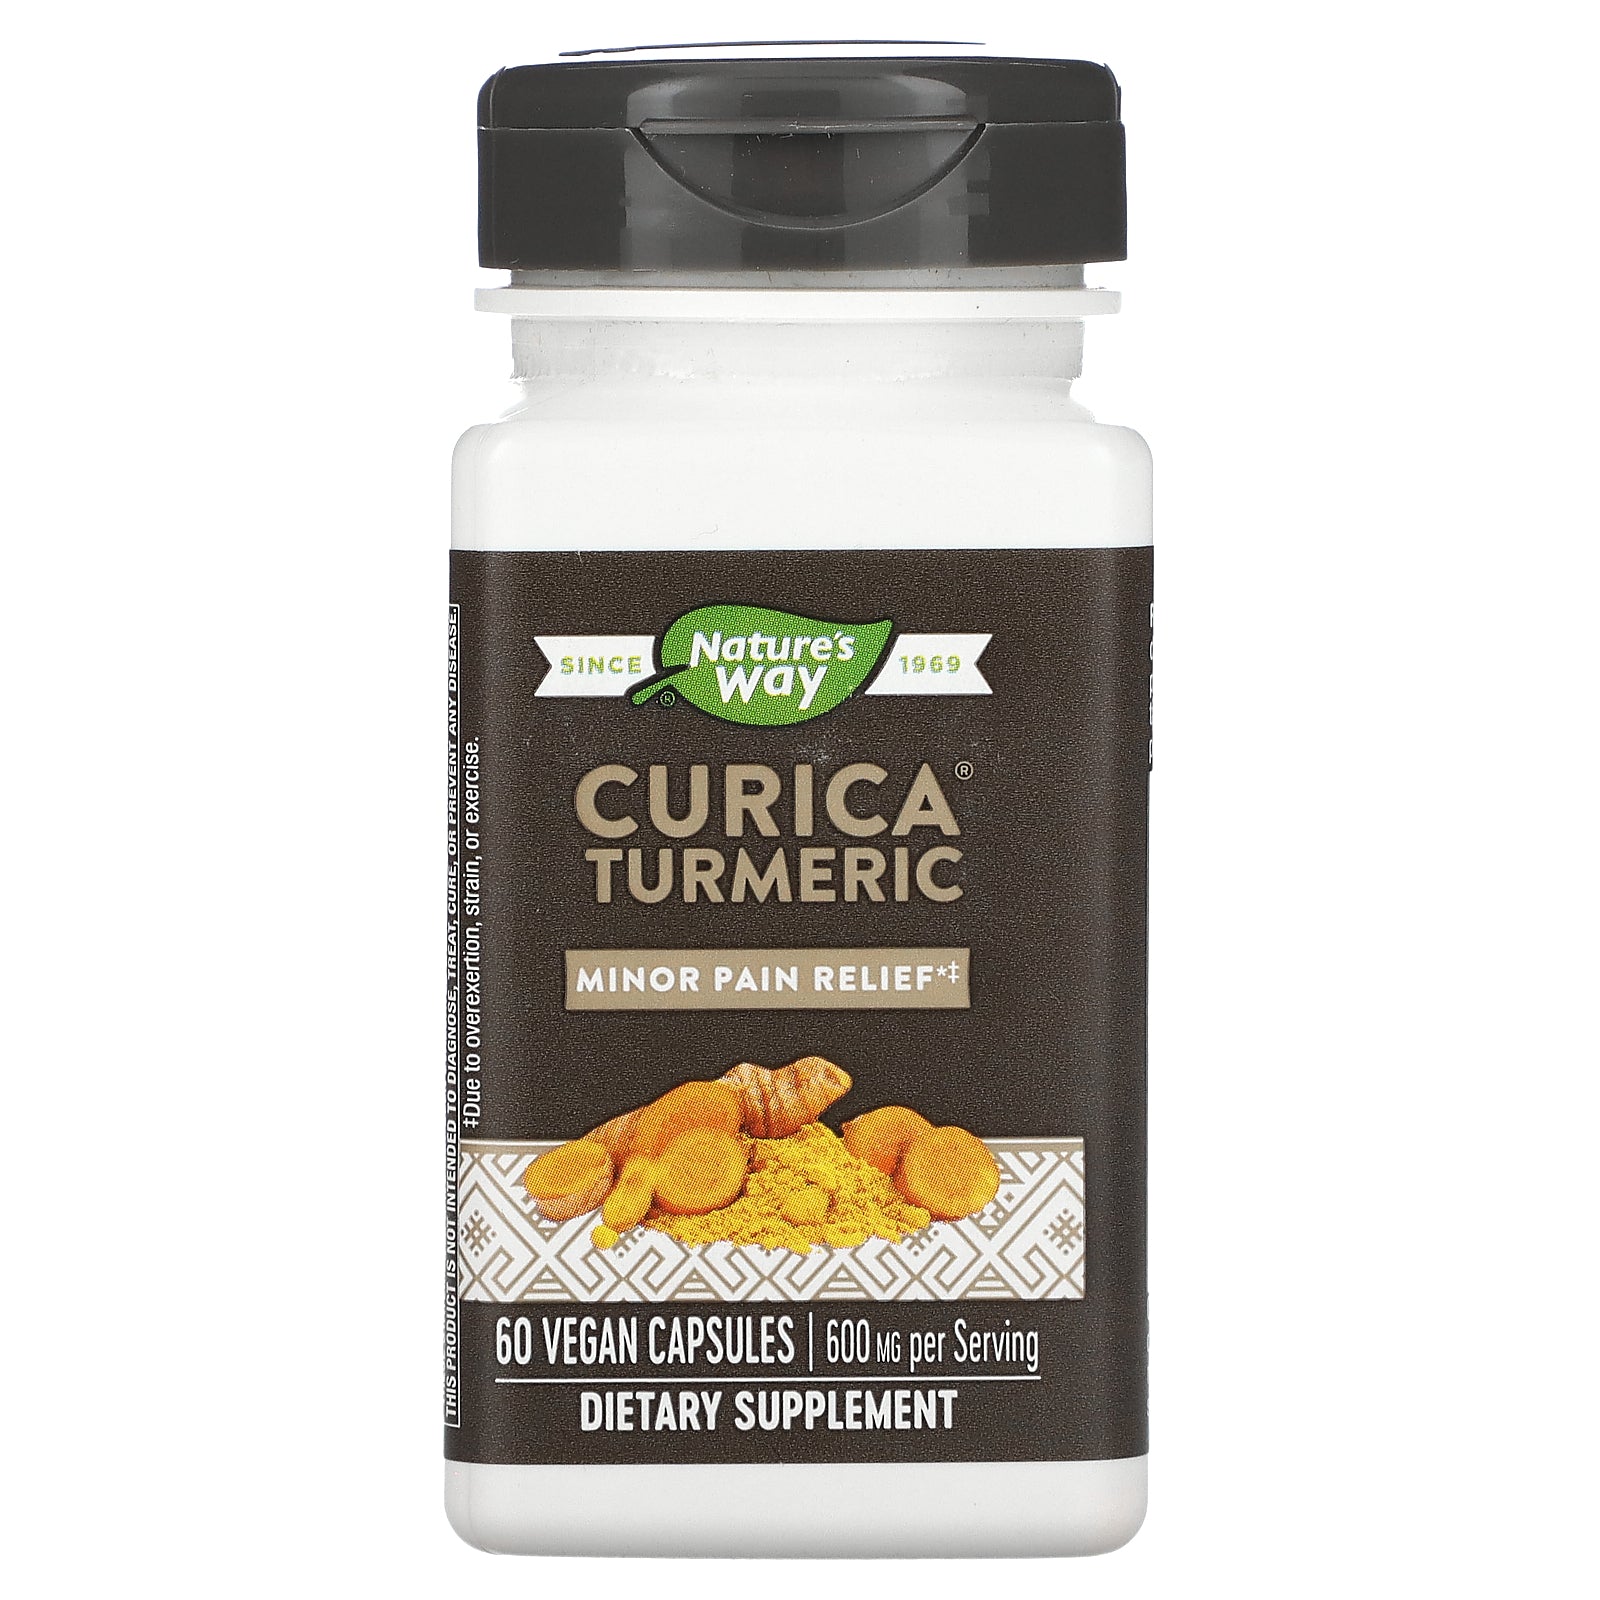 Nature's Way, Curica Turmeric, 600 mg, 60 Vegan Capsules (300 mg per Capsule)